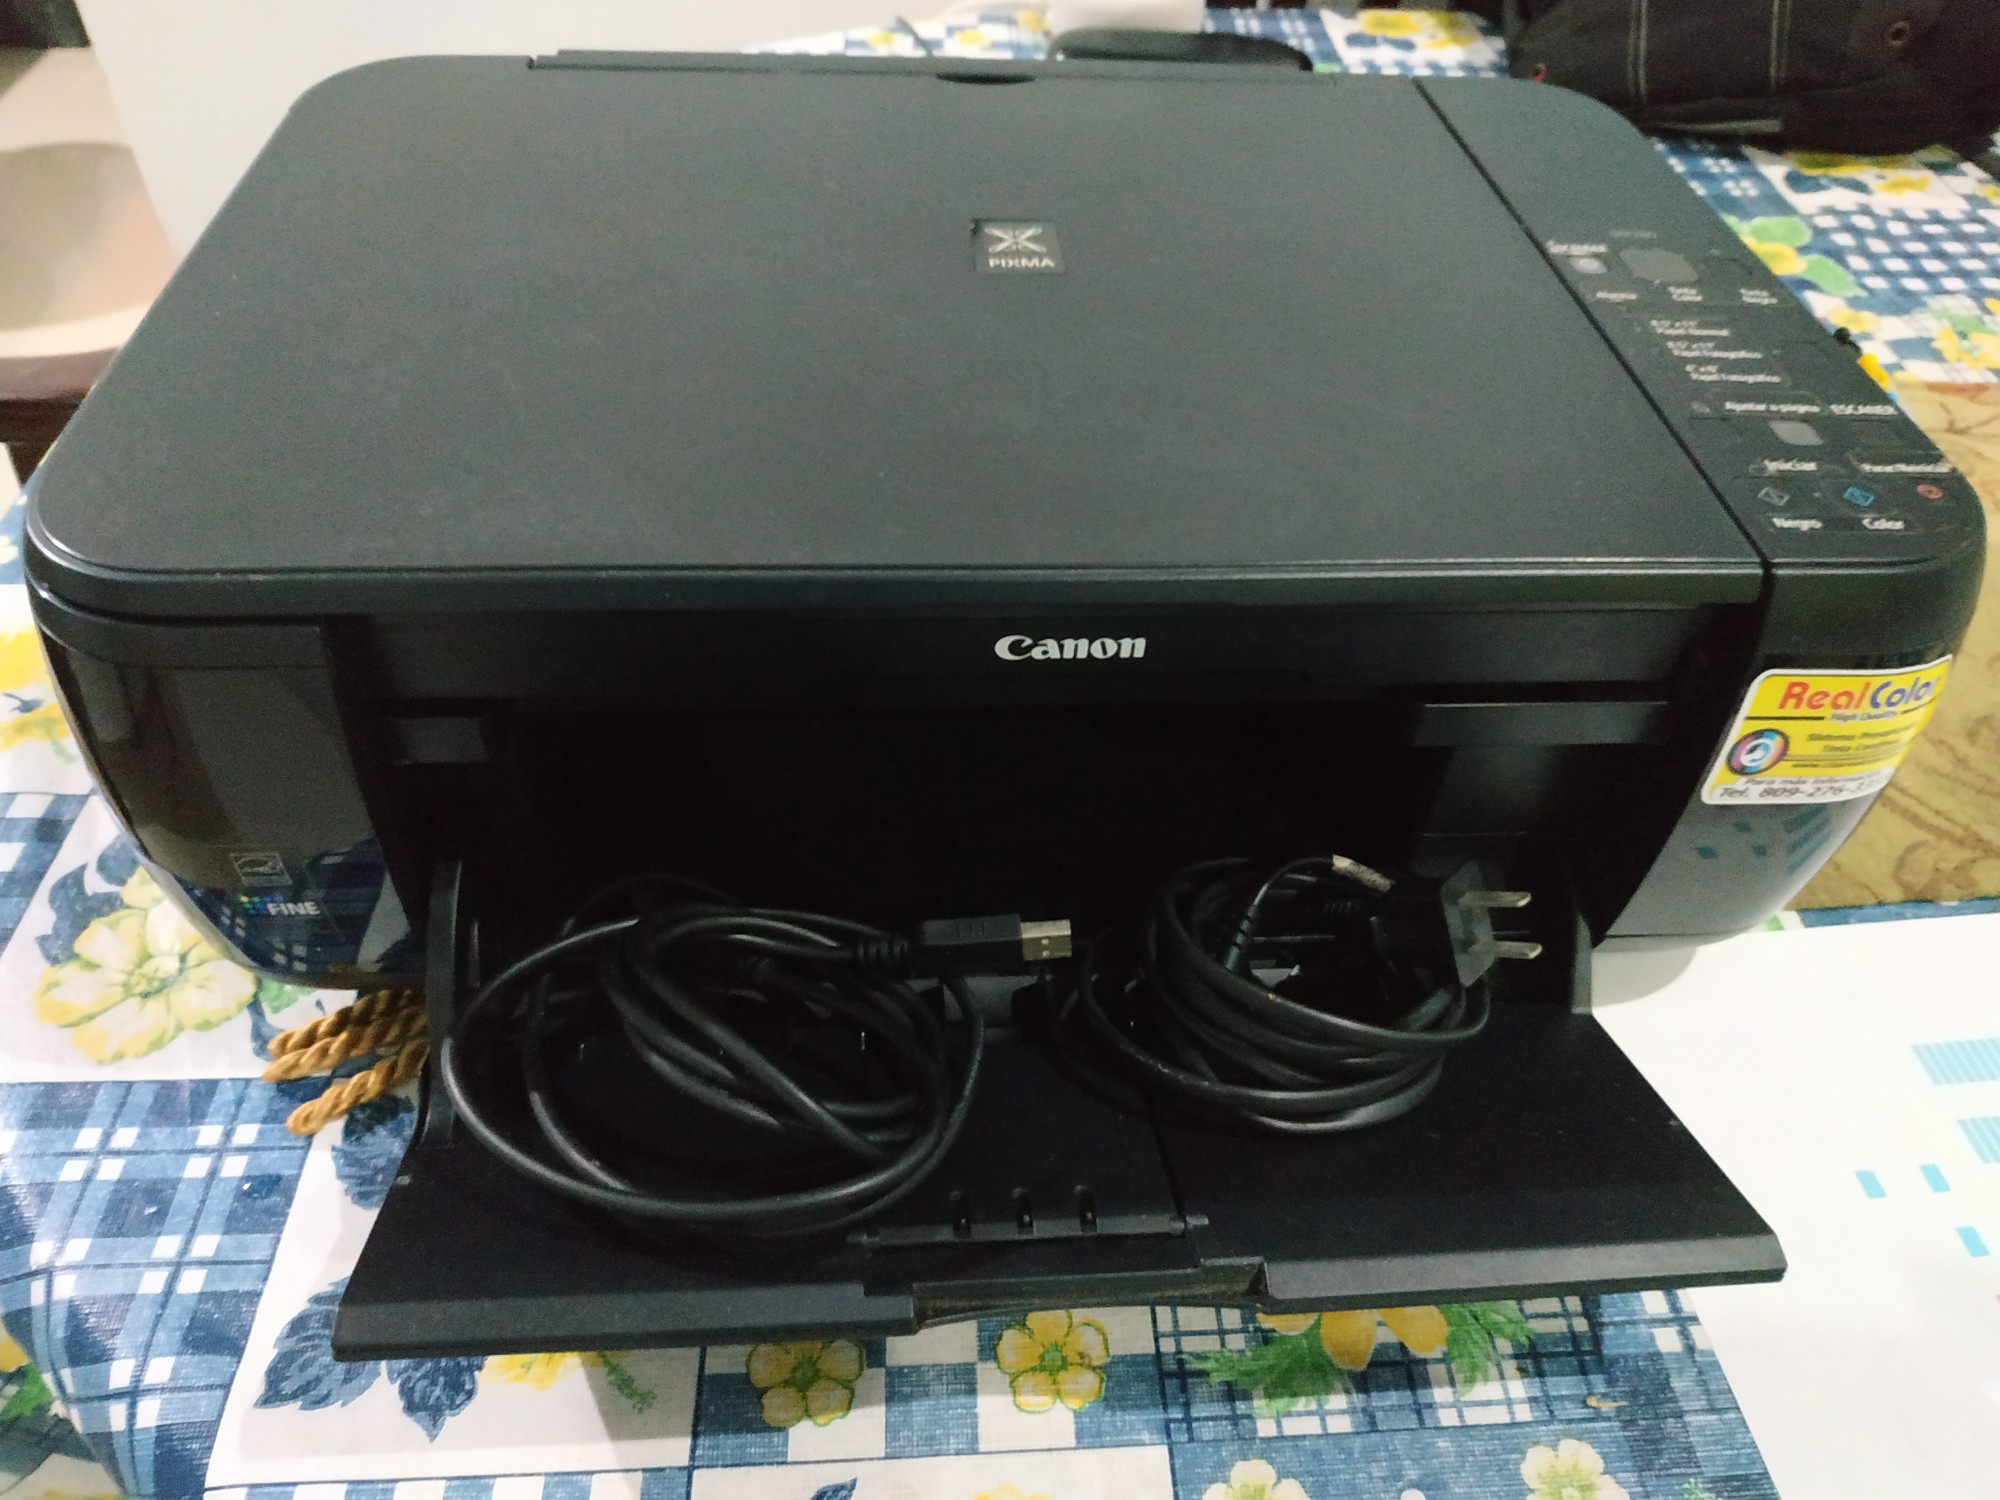 impresoras y scanners - Impresora Canon MP 280 con Sistema de tinta.